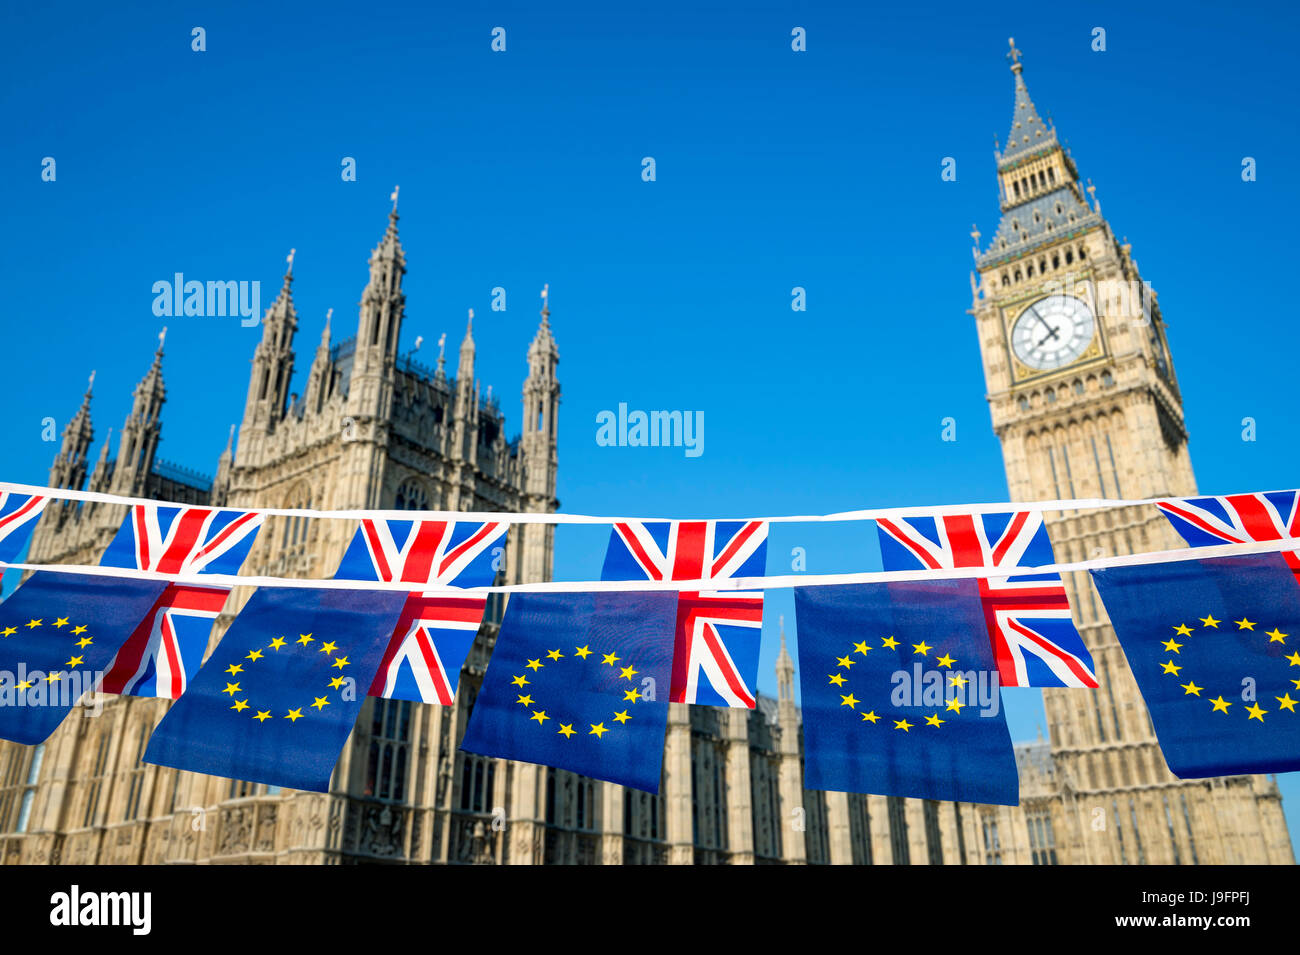 Europäische Union und Vereinigte Königreich Flagge Austritt Bunting hängen zusammen vor Big Ben und die Houses of Parliament, Westminster Palace Stockfoto